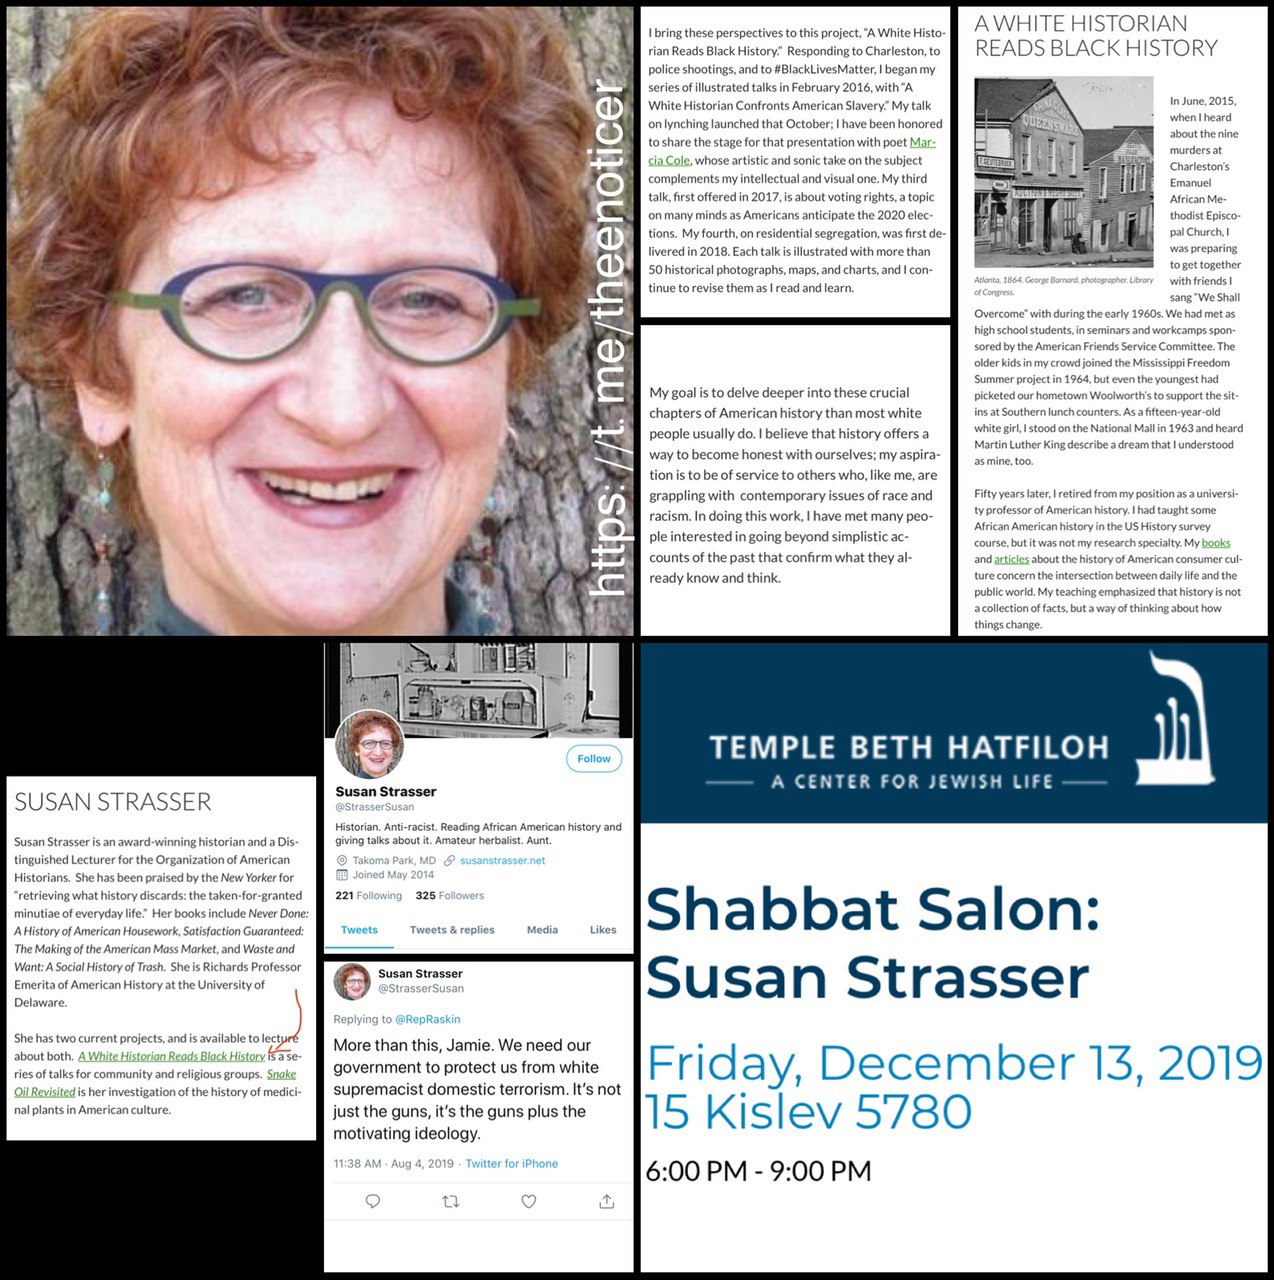 Susan Strasser